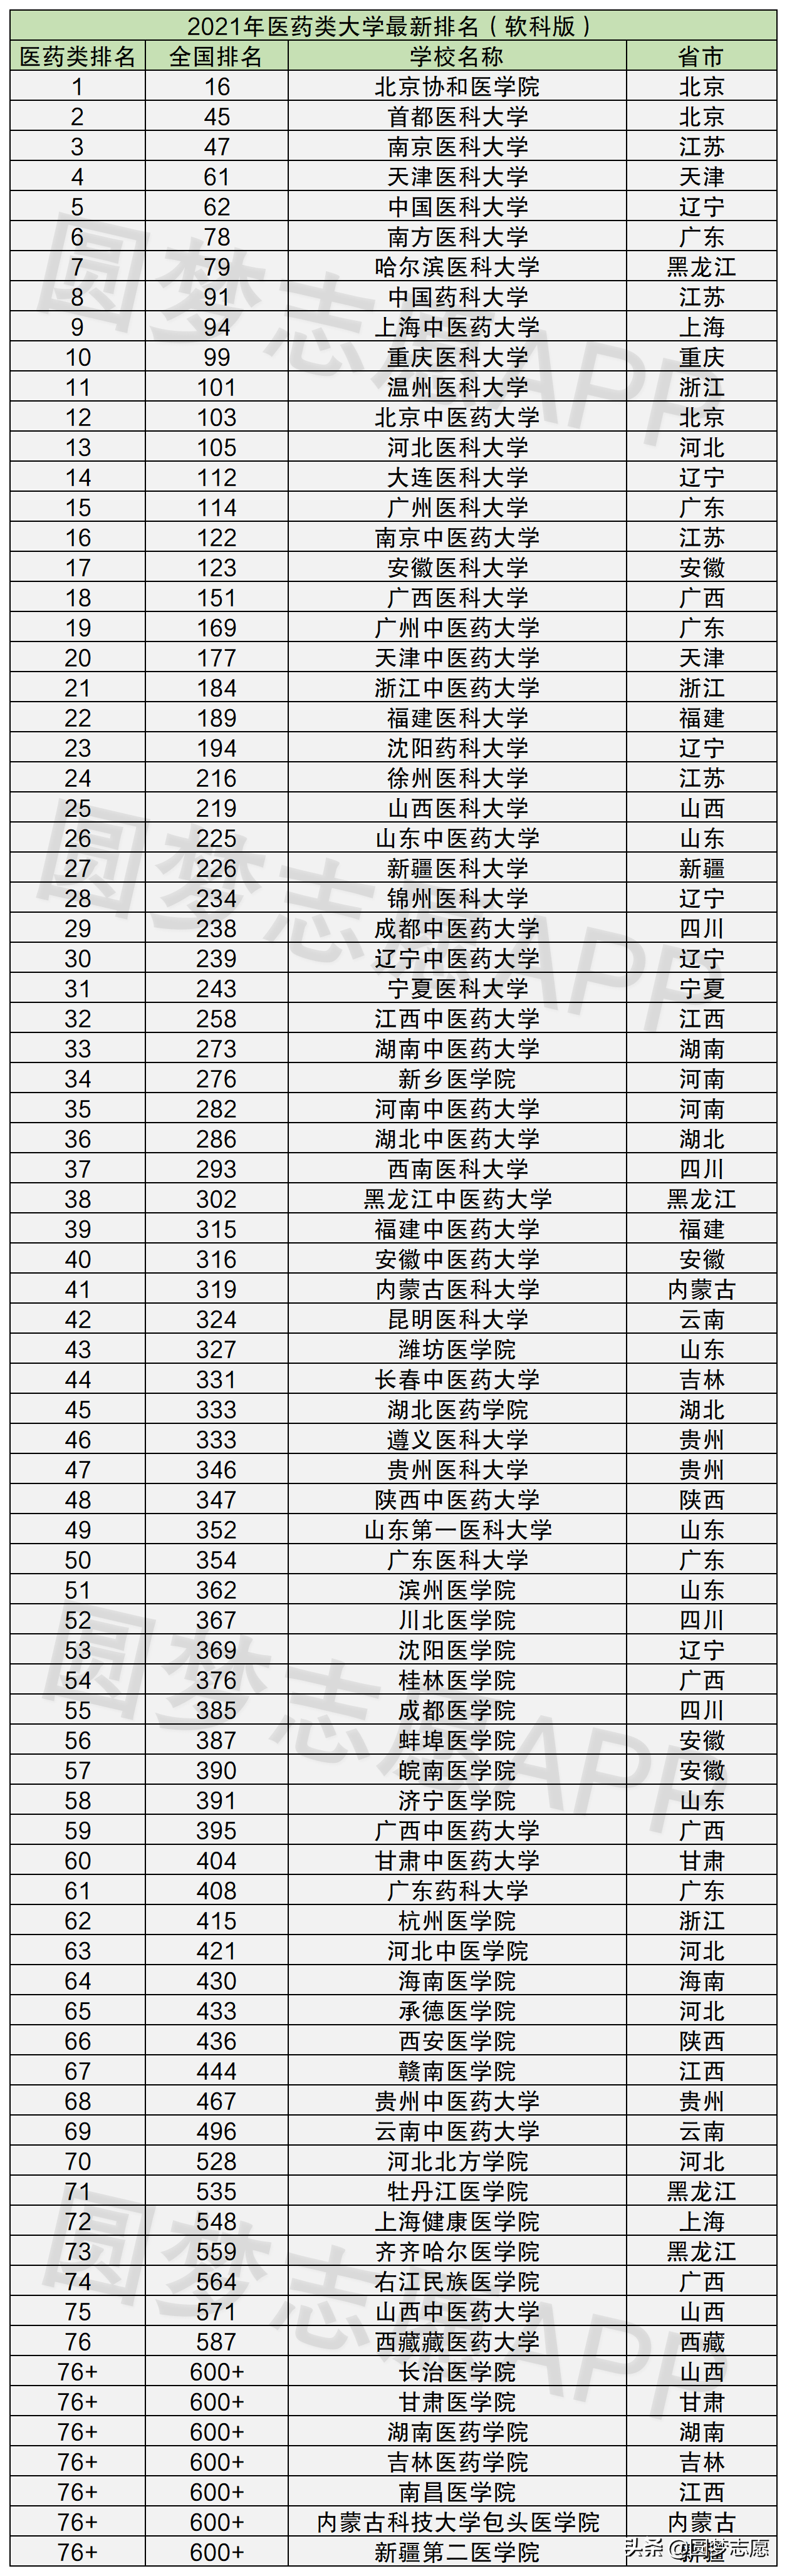 中国药科大学排名 中国三大药科大学